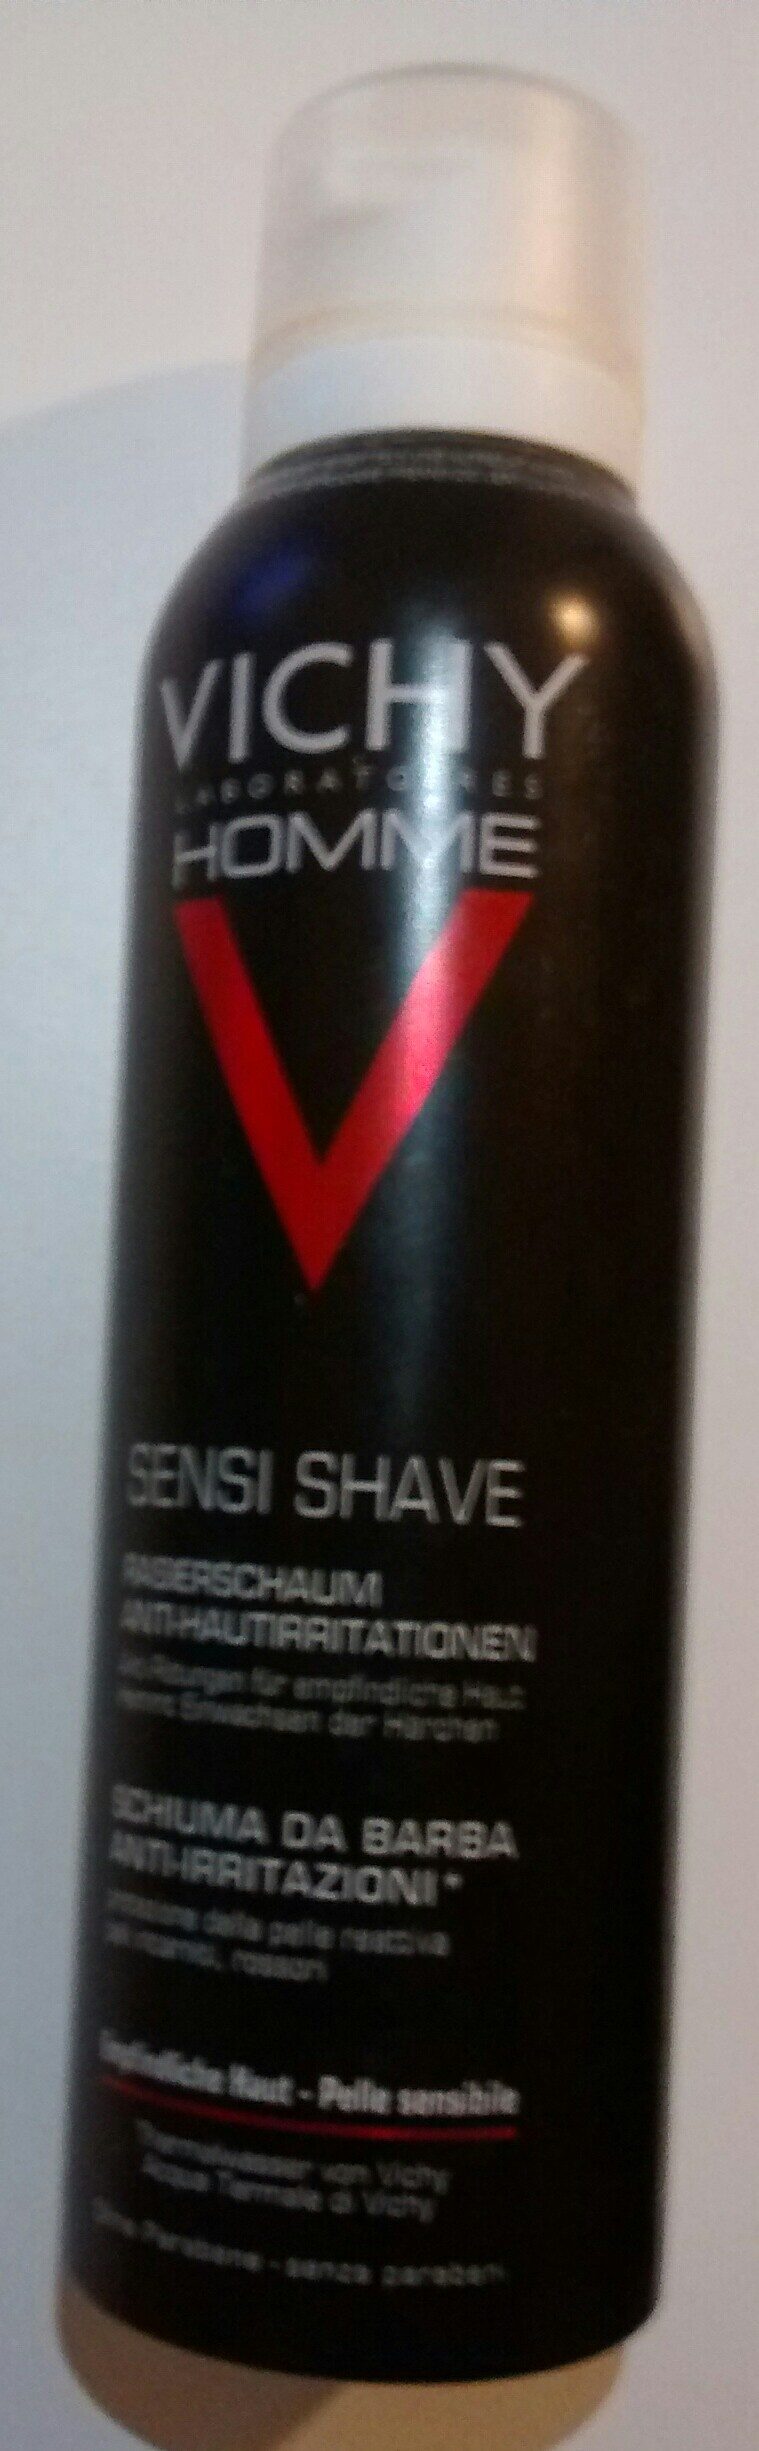 Sensi Shave Rasierschaum - Продукт - de